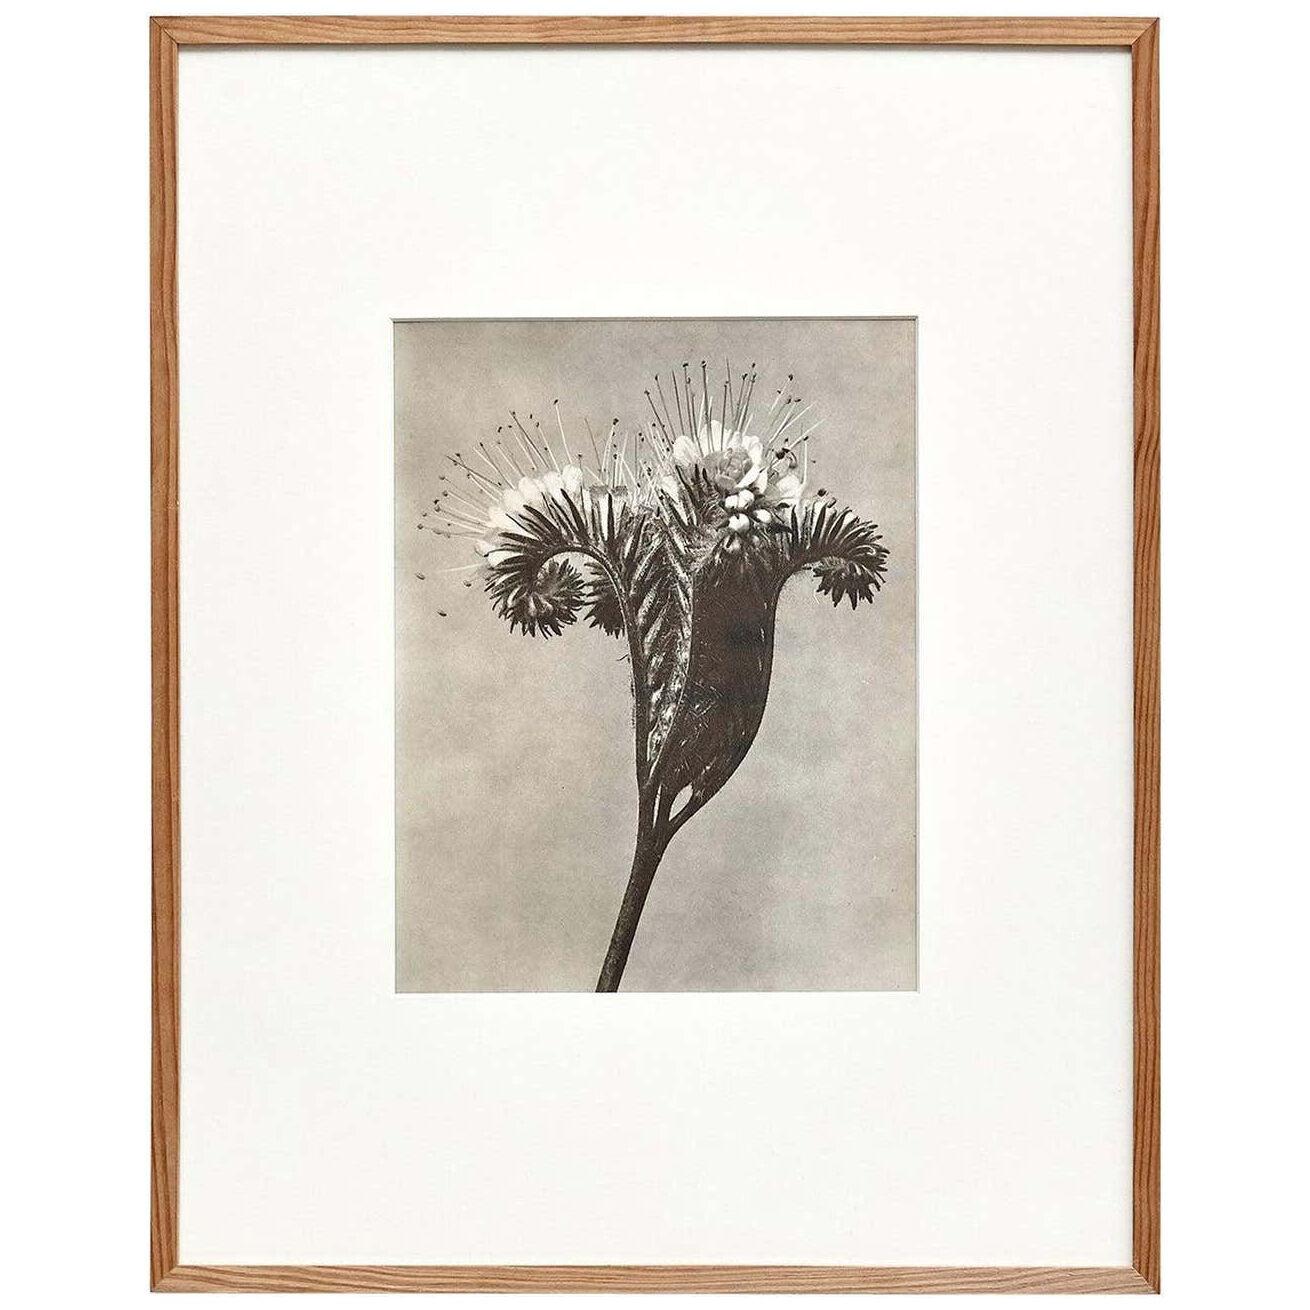 Karl Blossfeldt Black White Flower Photogravure Botanic Photography, 1942